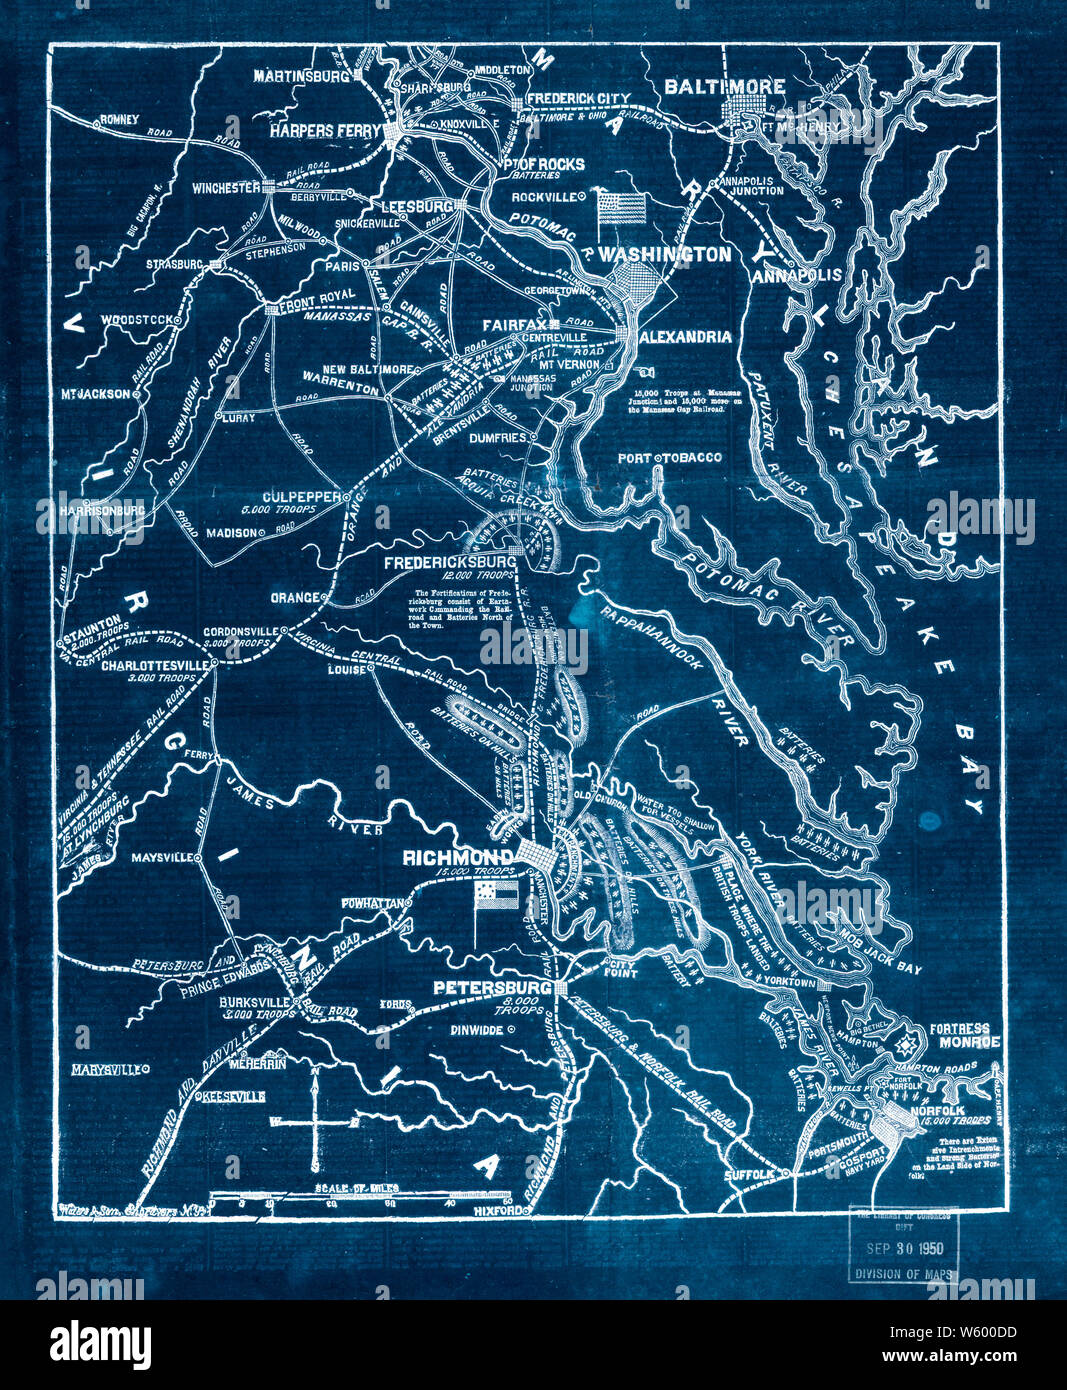 Bürgerkrieg Karten 1800 der Sitz des Krieges in Virginia Positionen der Rebellen Batterien intrenchments und Zeltdörfer in Virginia - die Befestigungsanlagen zum Schutz von Richmond invertiert Bauen und Reparieren Stockfoto